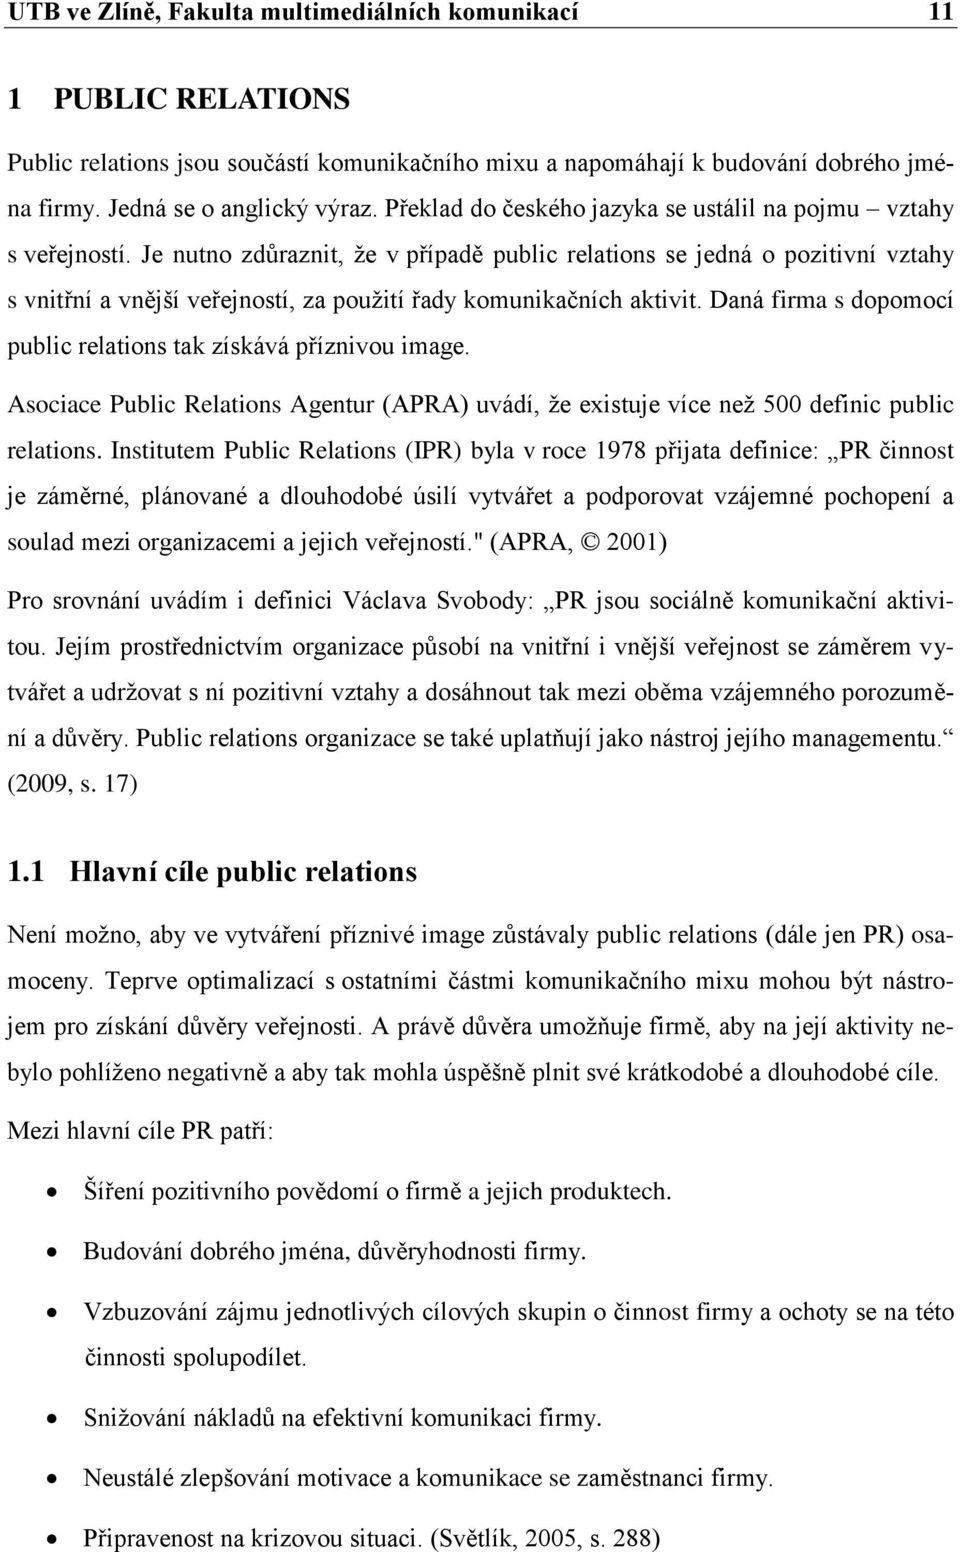 Interní komunikace ve vybrané firmě. Jana Najtová - PDF Stažení zdarma